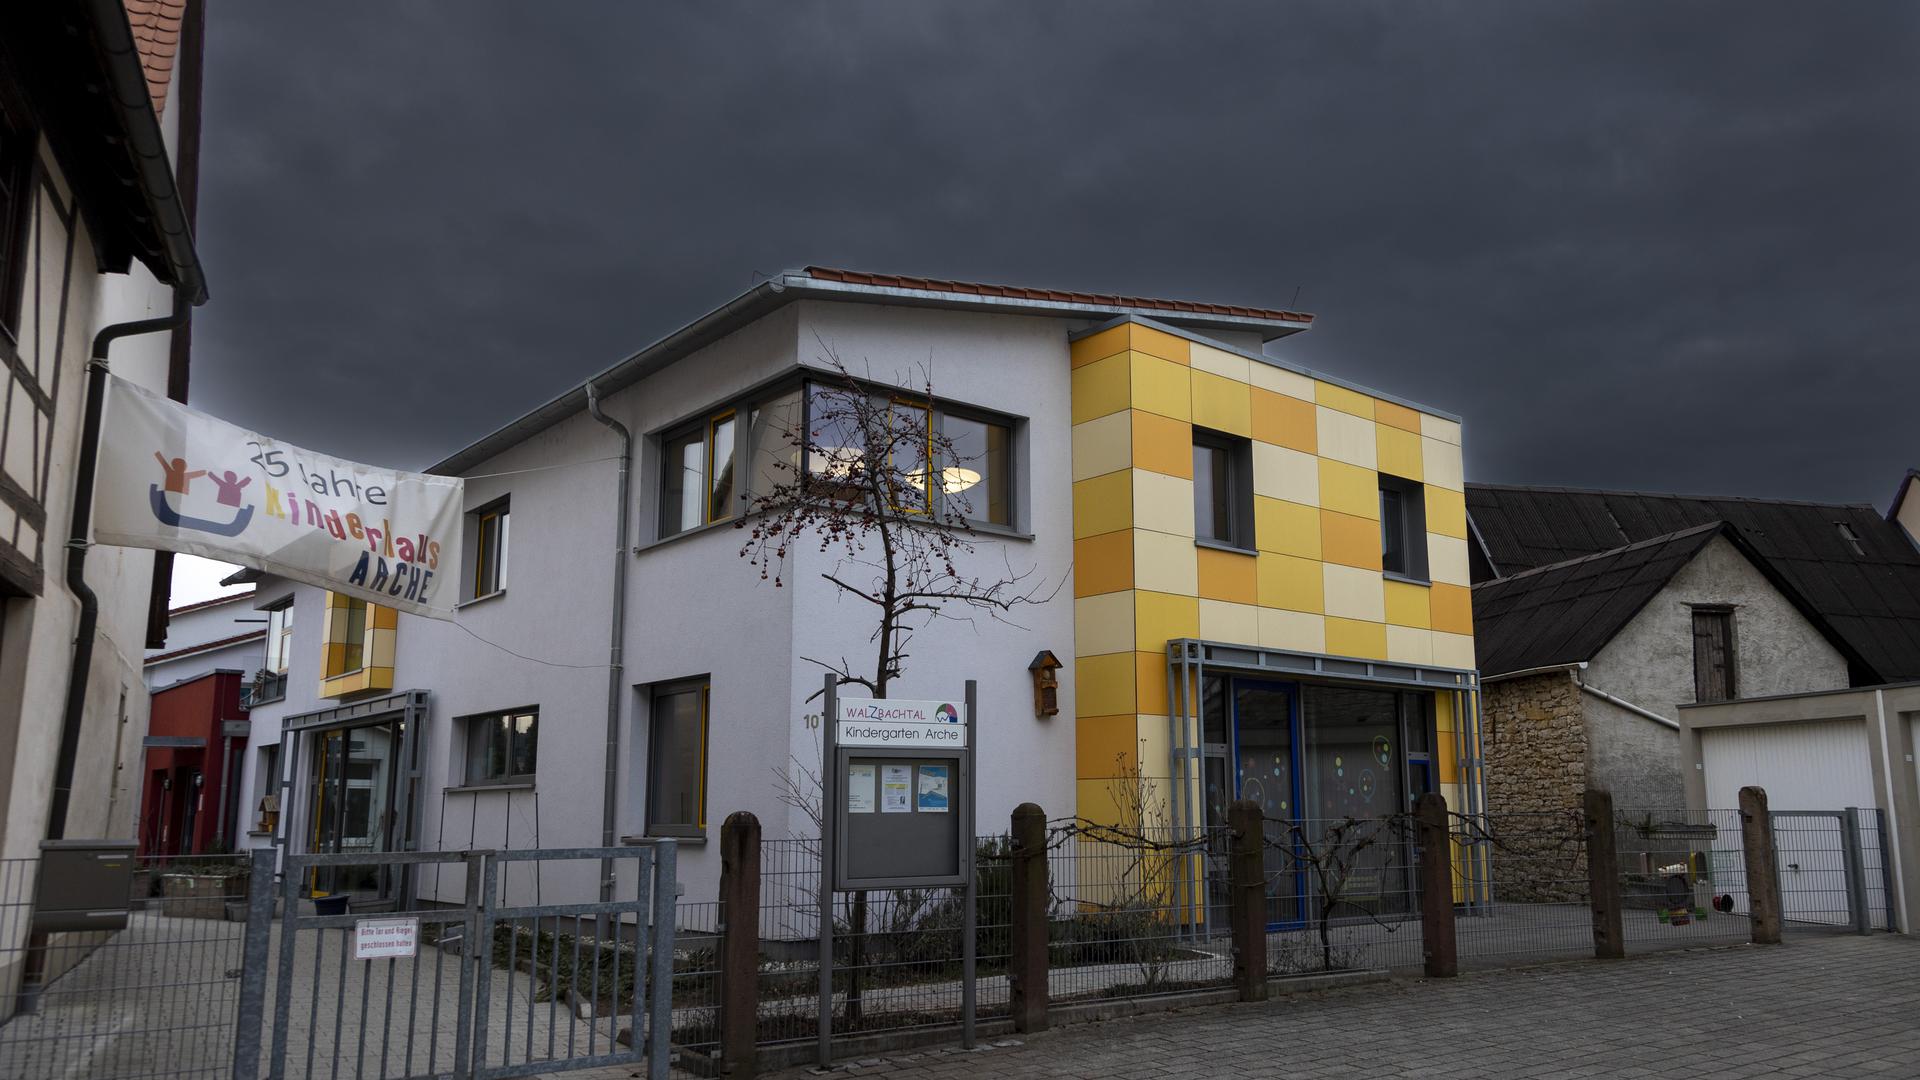 Dunkle Wolken ziehen über dem Kinderhaus „Arche“ in Walzbachtal-Jöhlingen auf. 